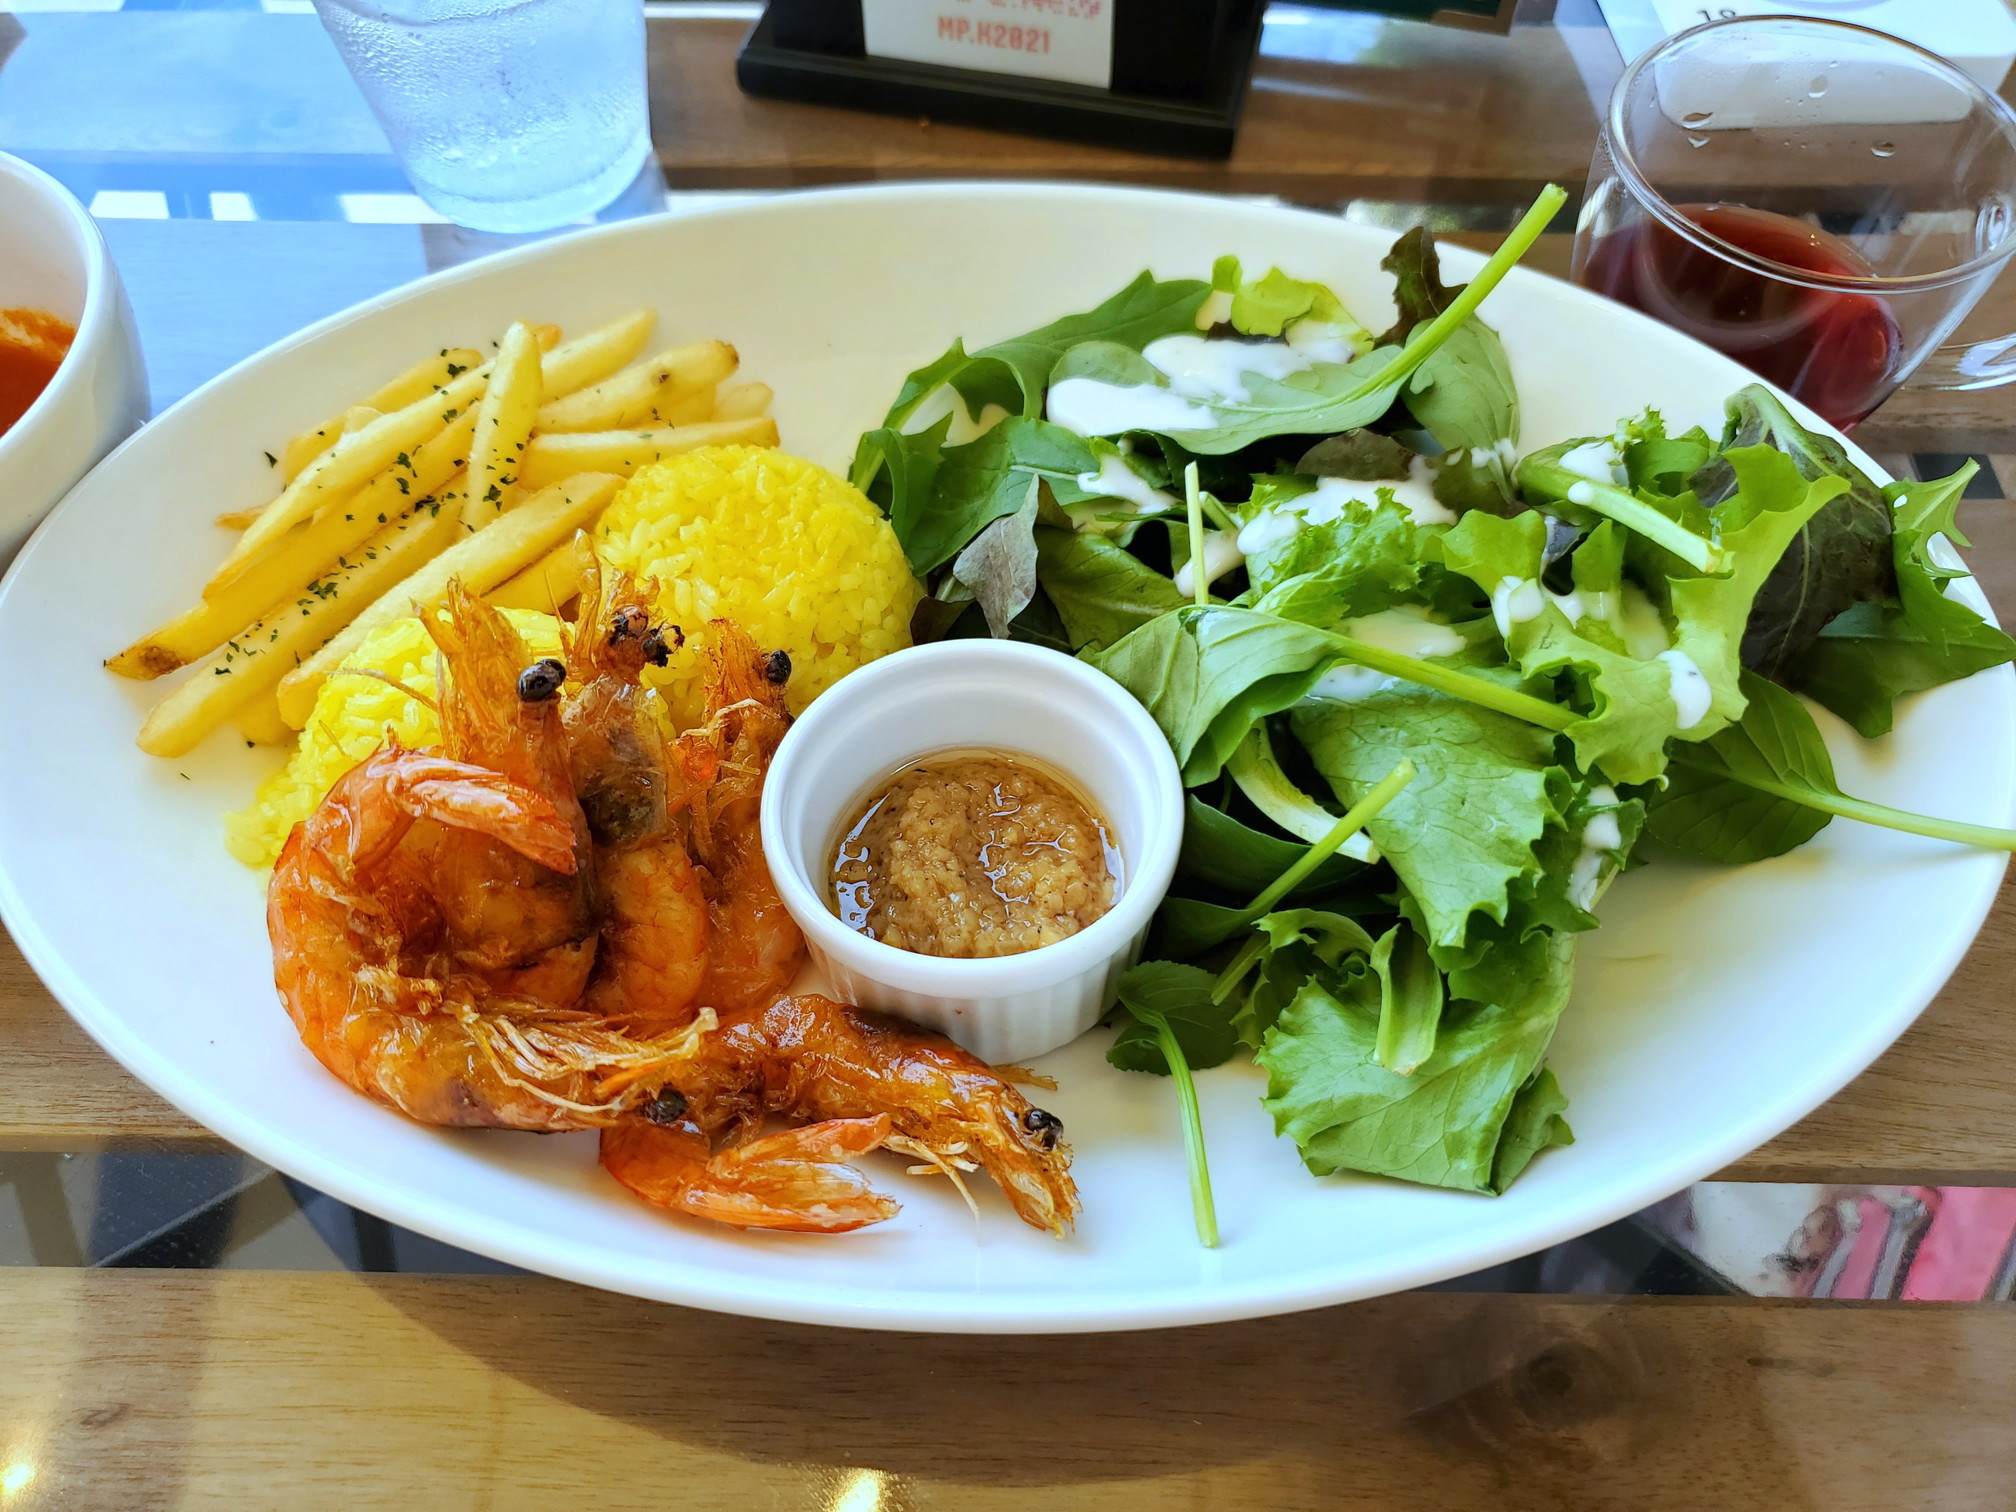 Hawaiian Cafe(ハワイアンカフェ) 魔法のパンケーキ 木津川店